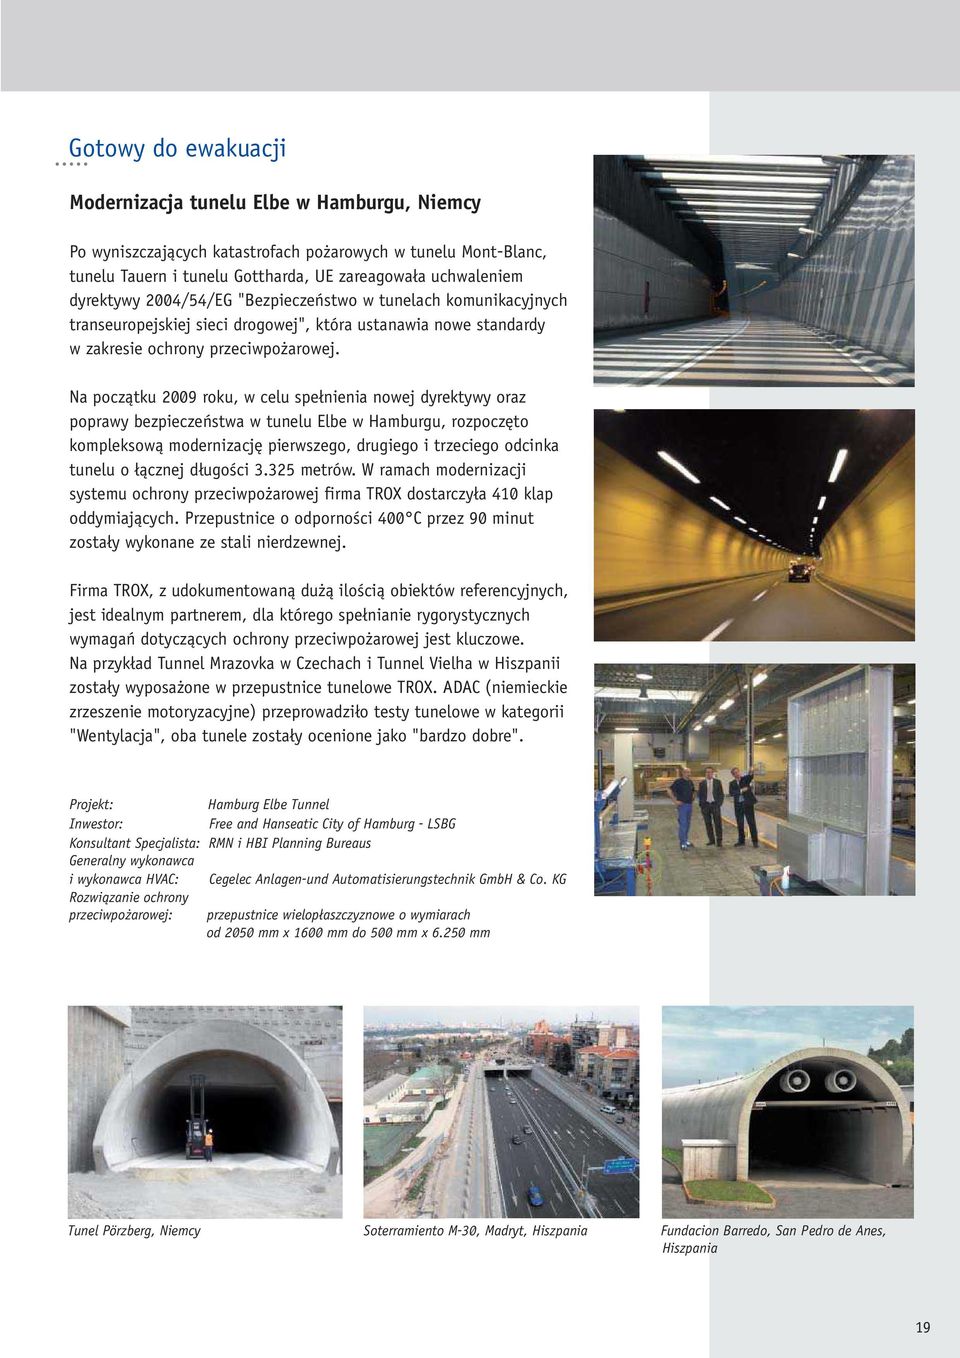 Na początku 2009 roku, w celu spełnienia nowej dyrektywy oraz poprawy bezpieczeństwa w tunelu Elbe w Hamburgu, rozpoczęto kompleksową modernizację pierwszego, drugiego i trzeciego odcinka tunelu o